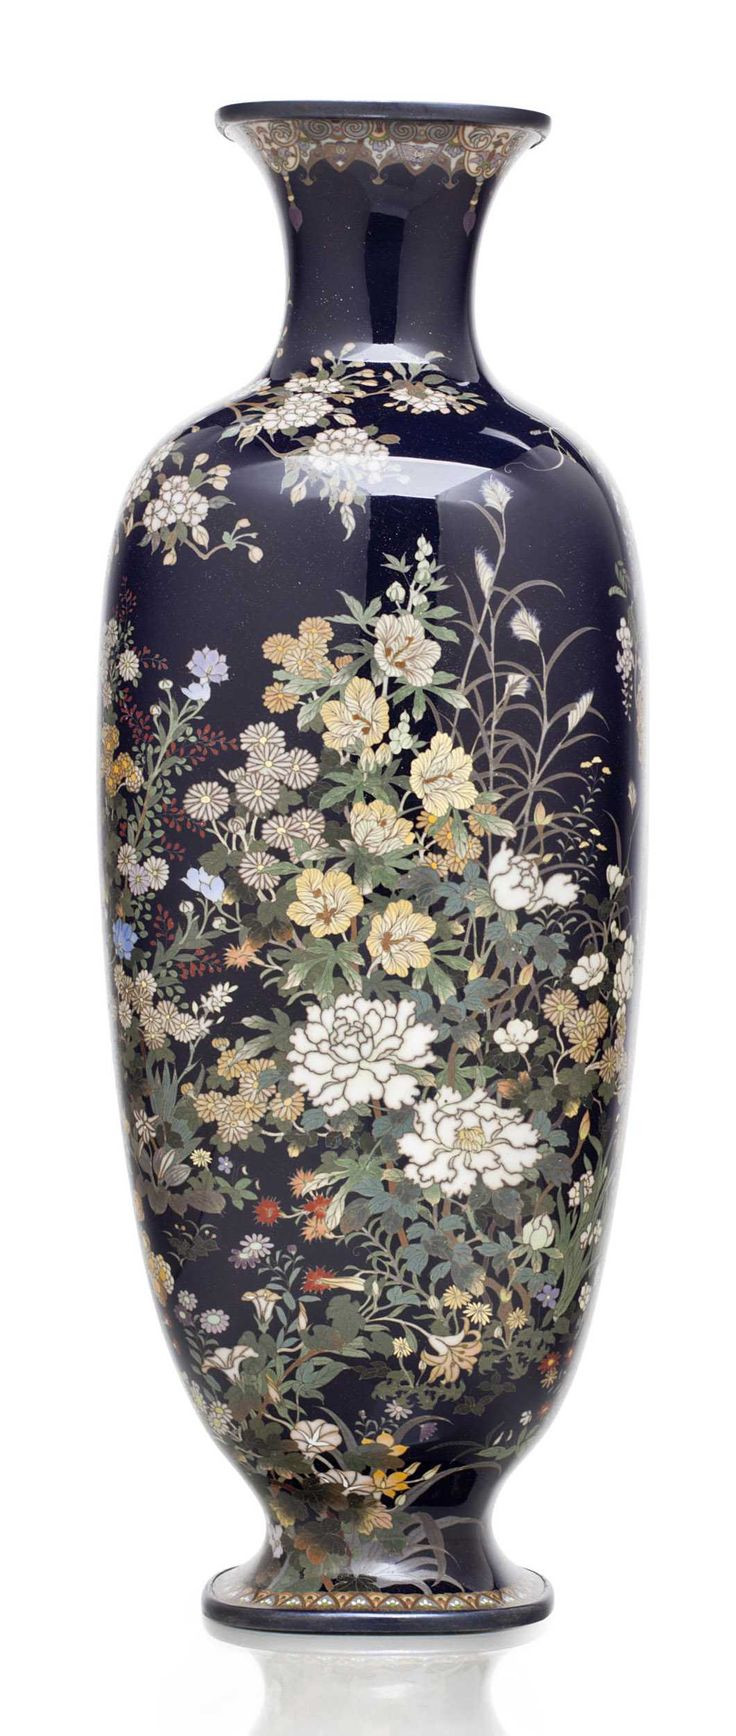 14 Best Franz Porcelain butterfly Vase 2024 free download franz porcelain butterfly vase of 4983 best dc292ddc2b7nc28b dc2b8 nc282nc28bdodc2b2nc28b images on pinterest flower vases ceramic inside a cloisonna enamel vase